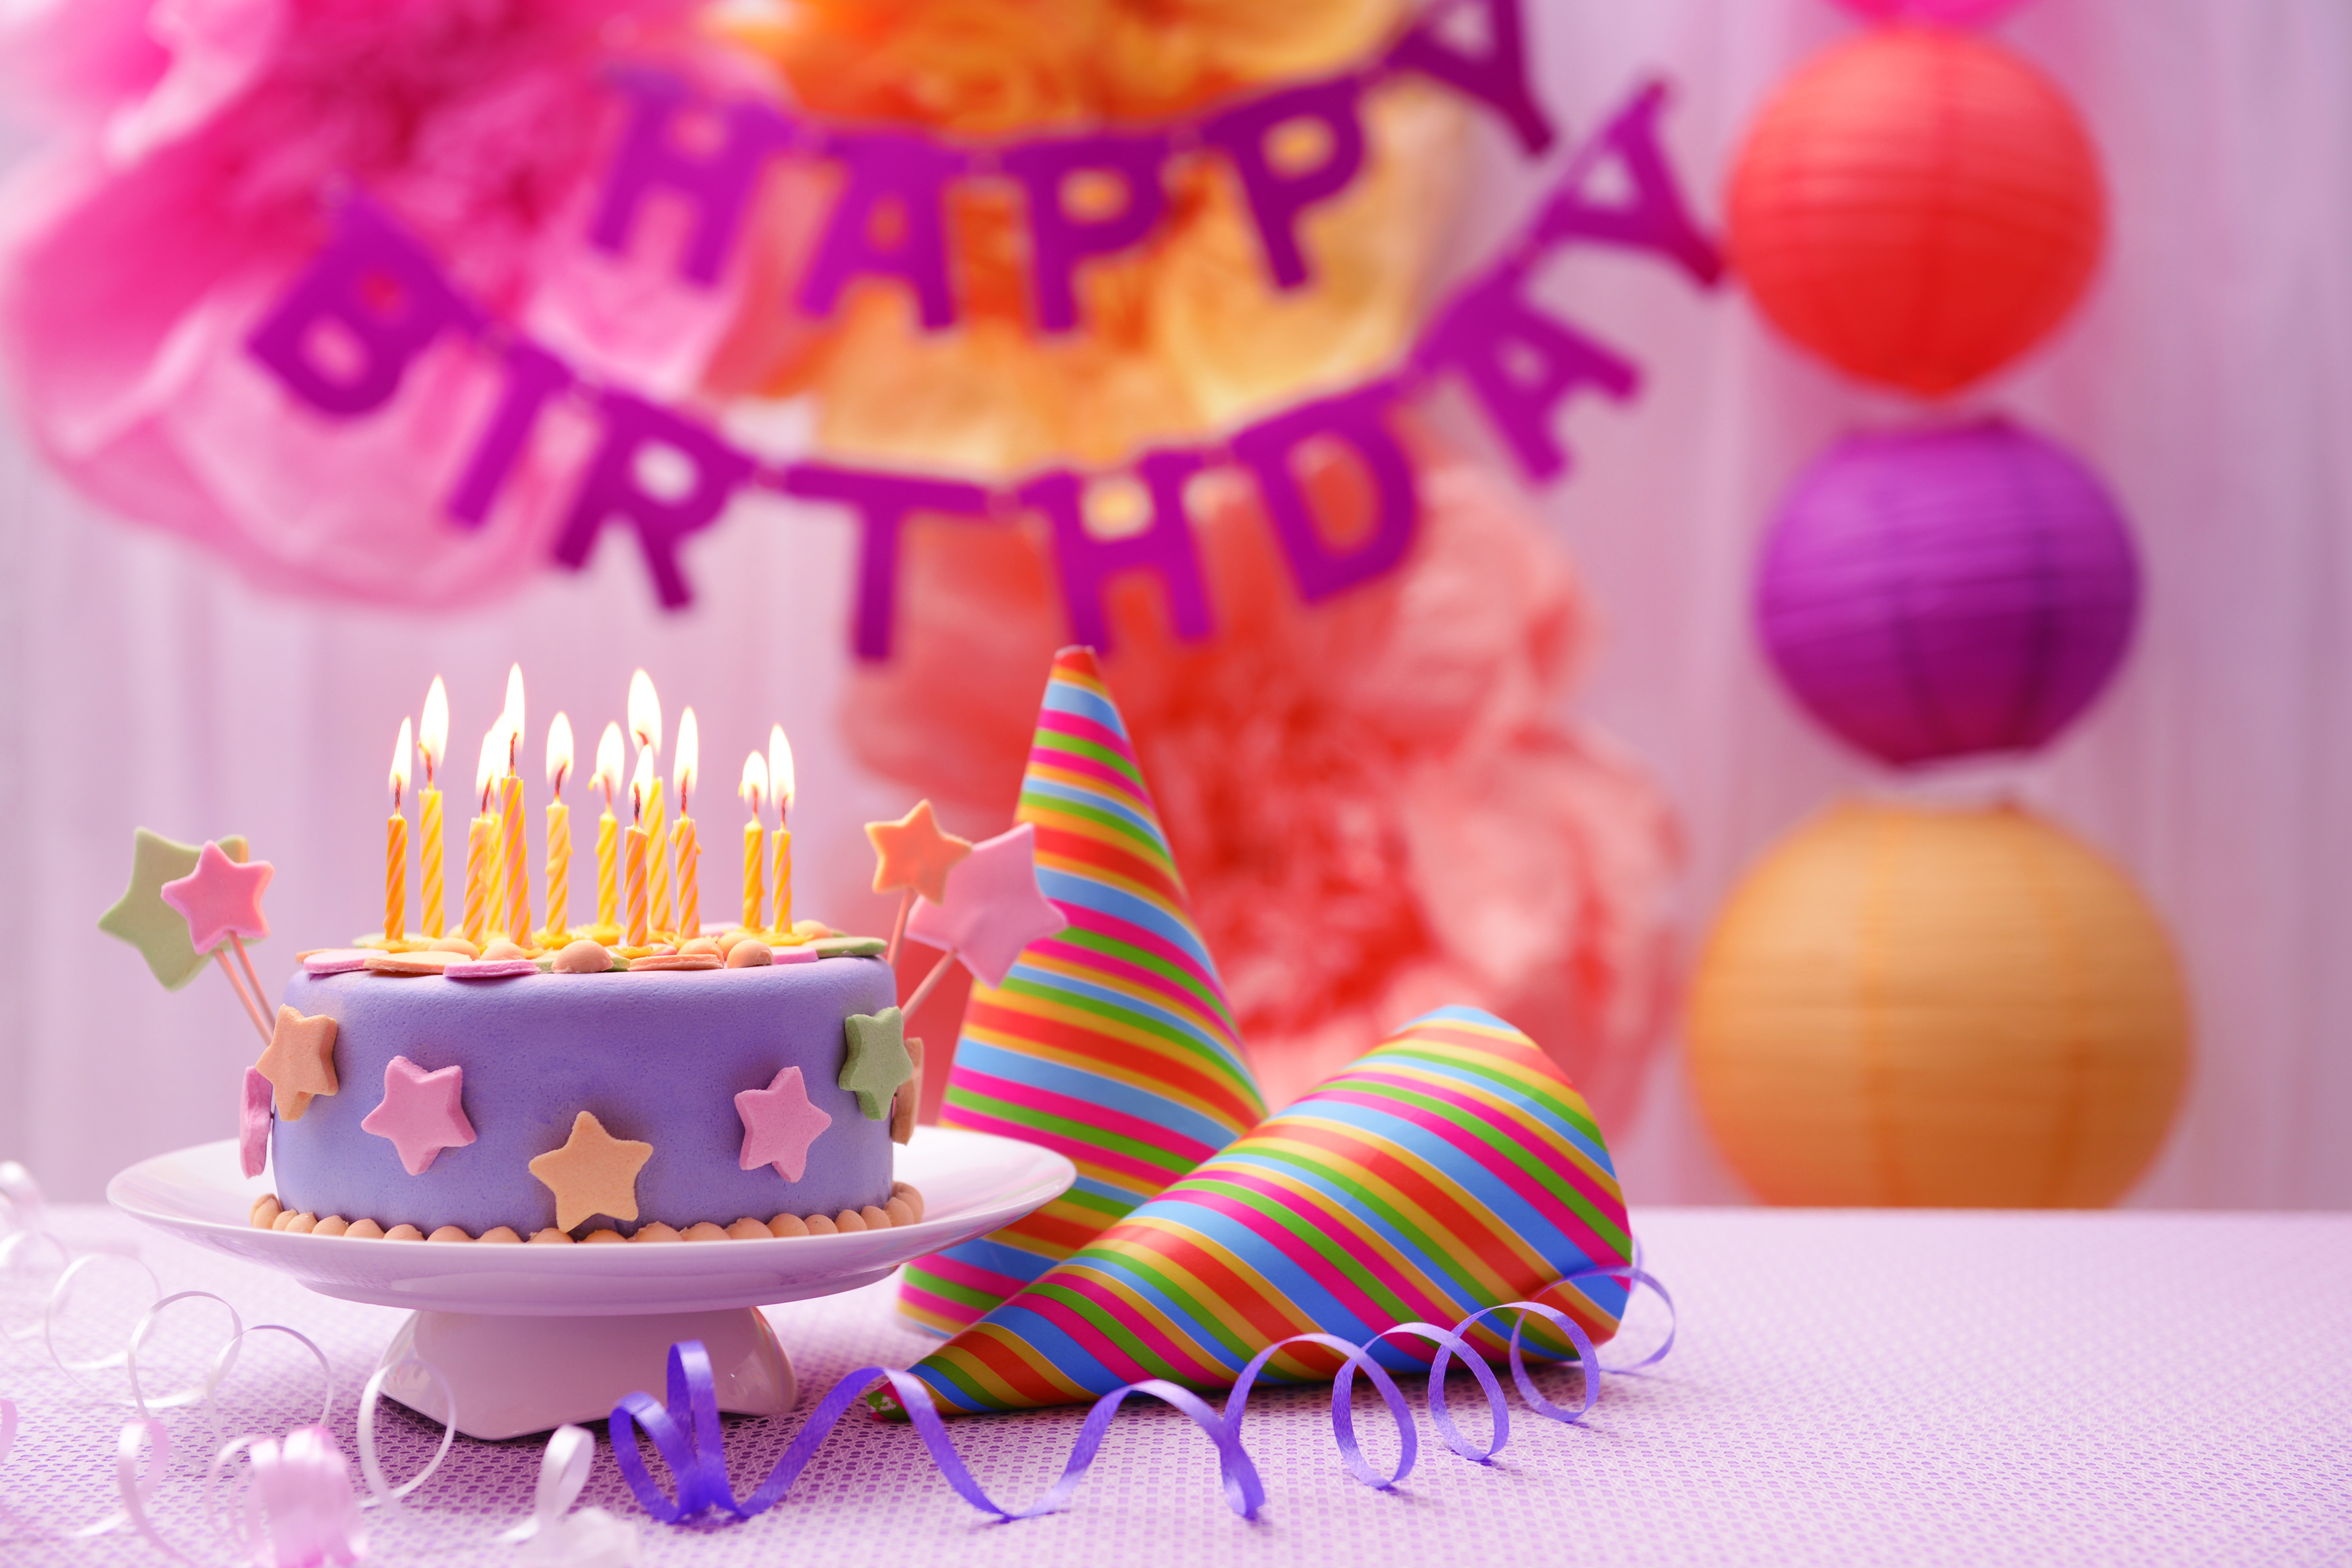 A birthday. С днем рождения. Тортик с днем рождения. Открытка с днём рождения торт. С днем рождения торт и цветы.